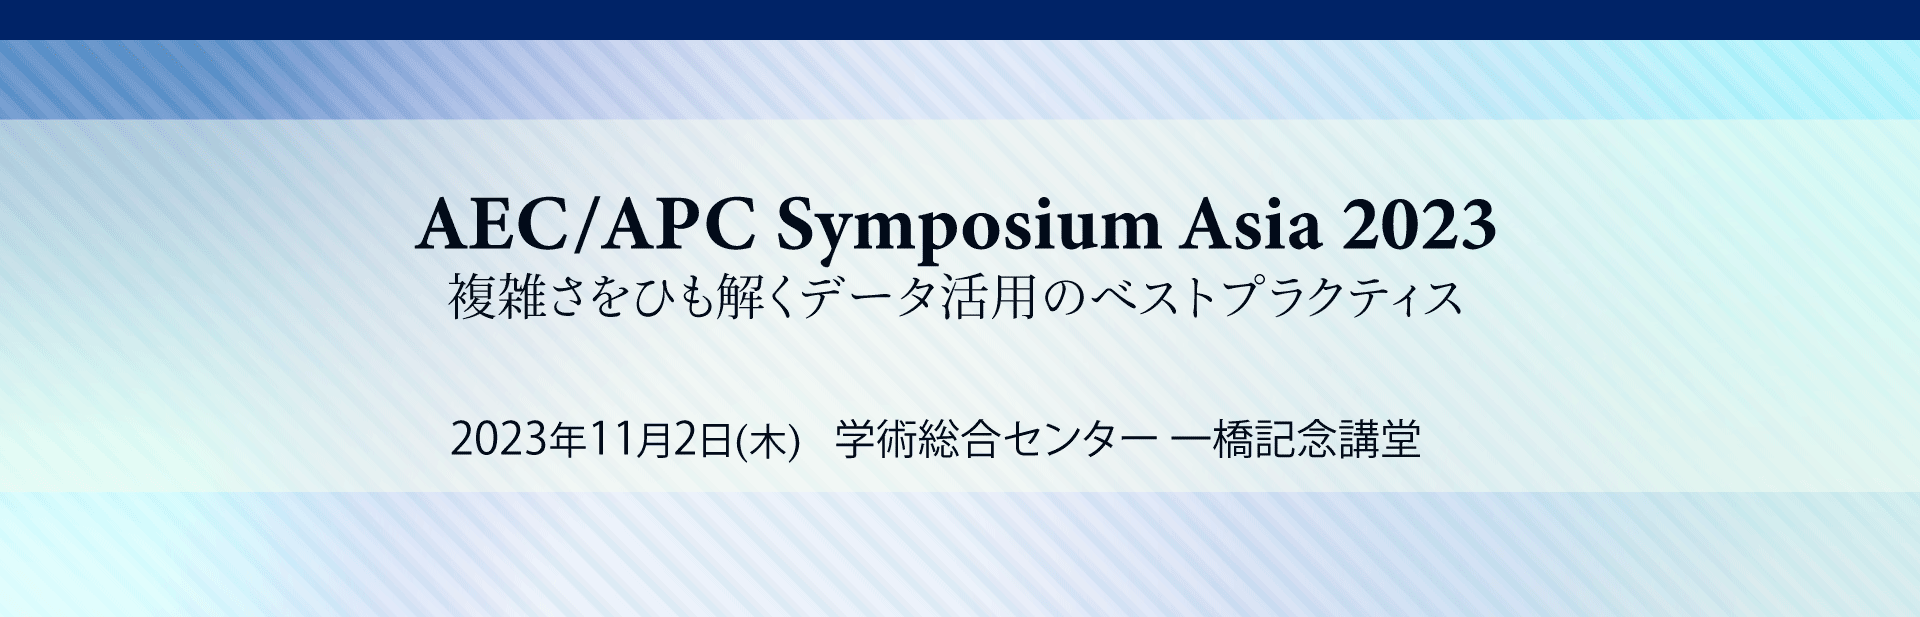 AEC/APC Symposium Asia 2023 -複雑さをひも解くデータ活用のベストプラクティス